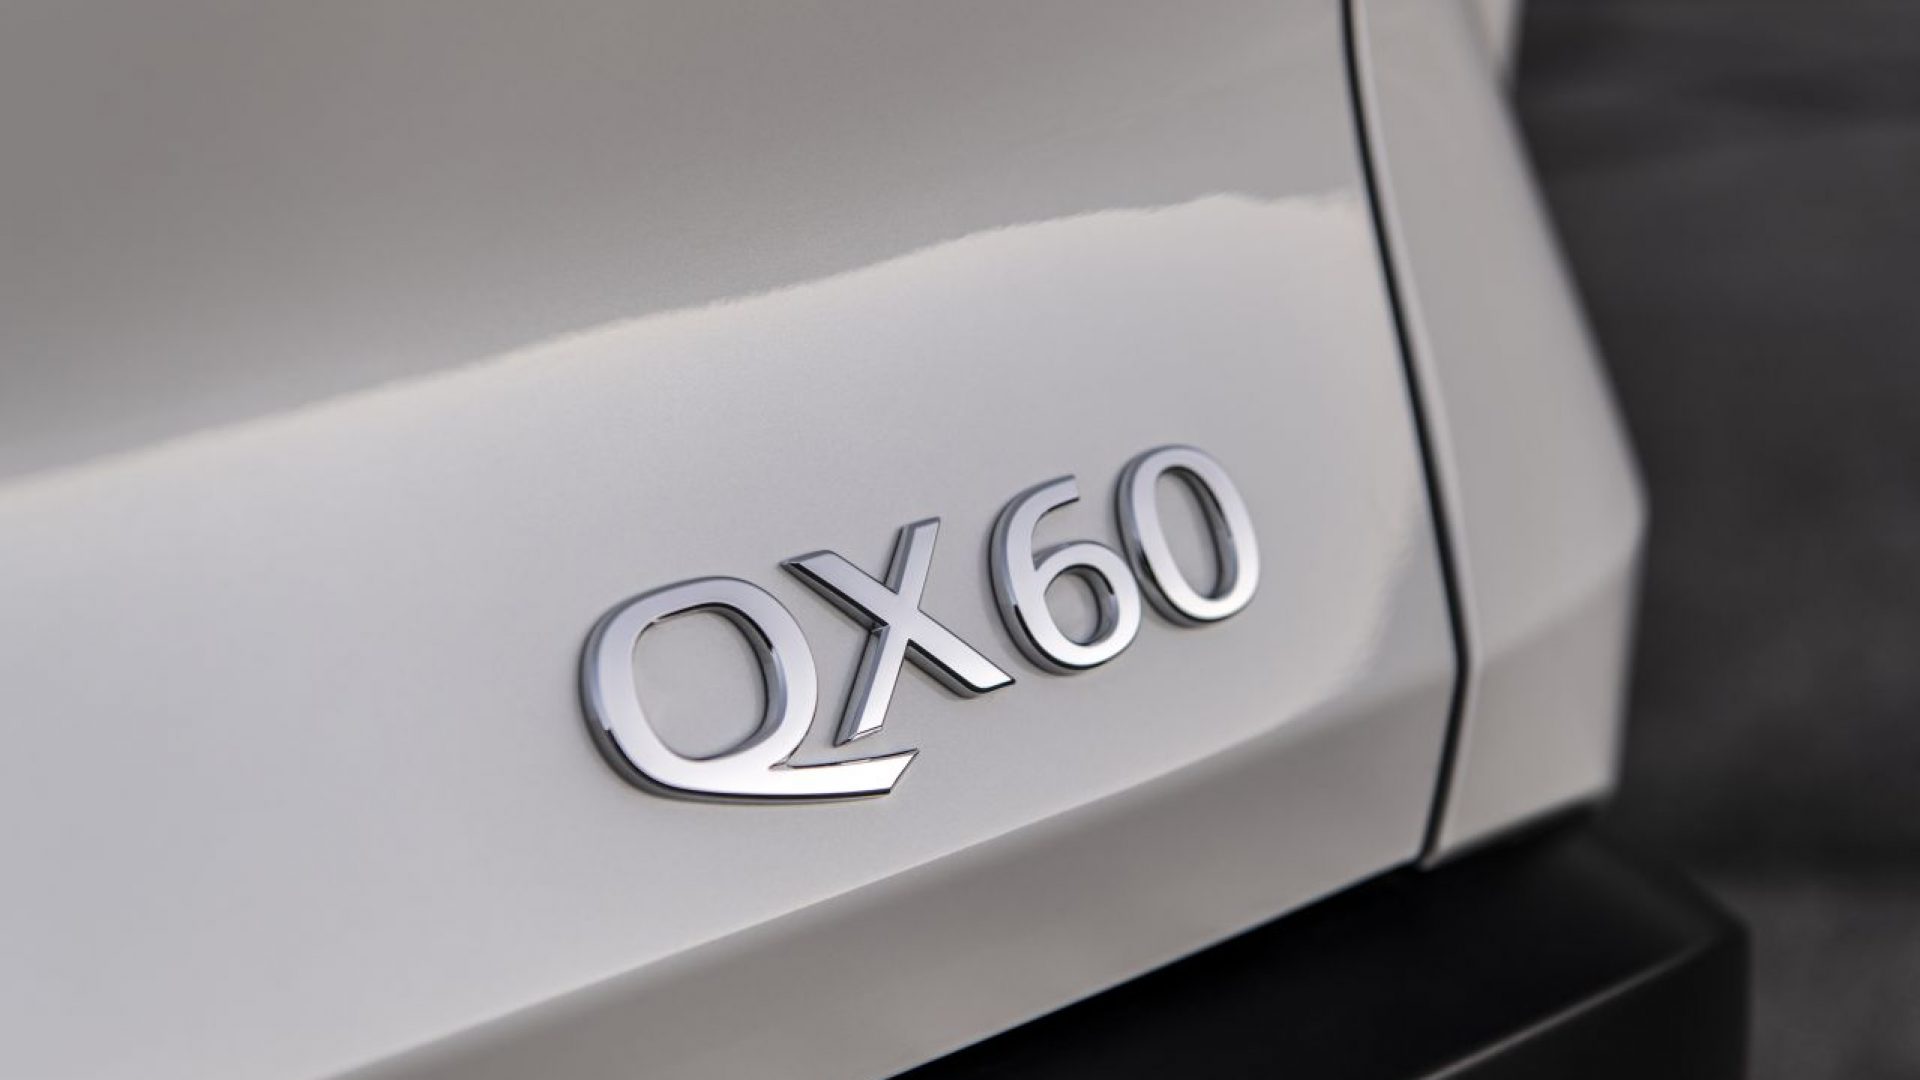 The all-new INFINITI QX60